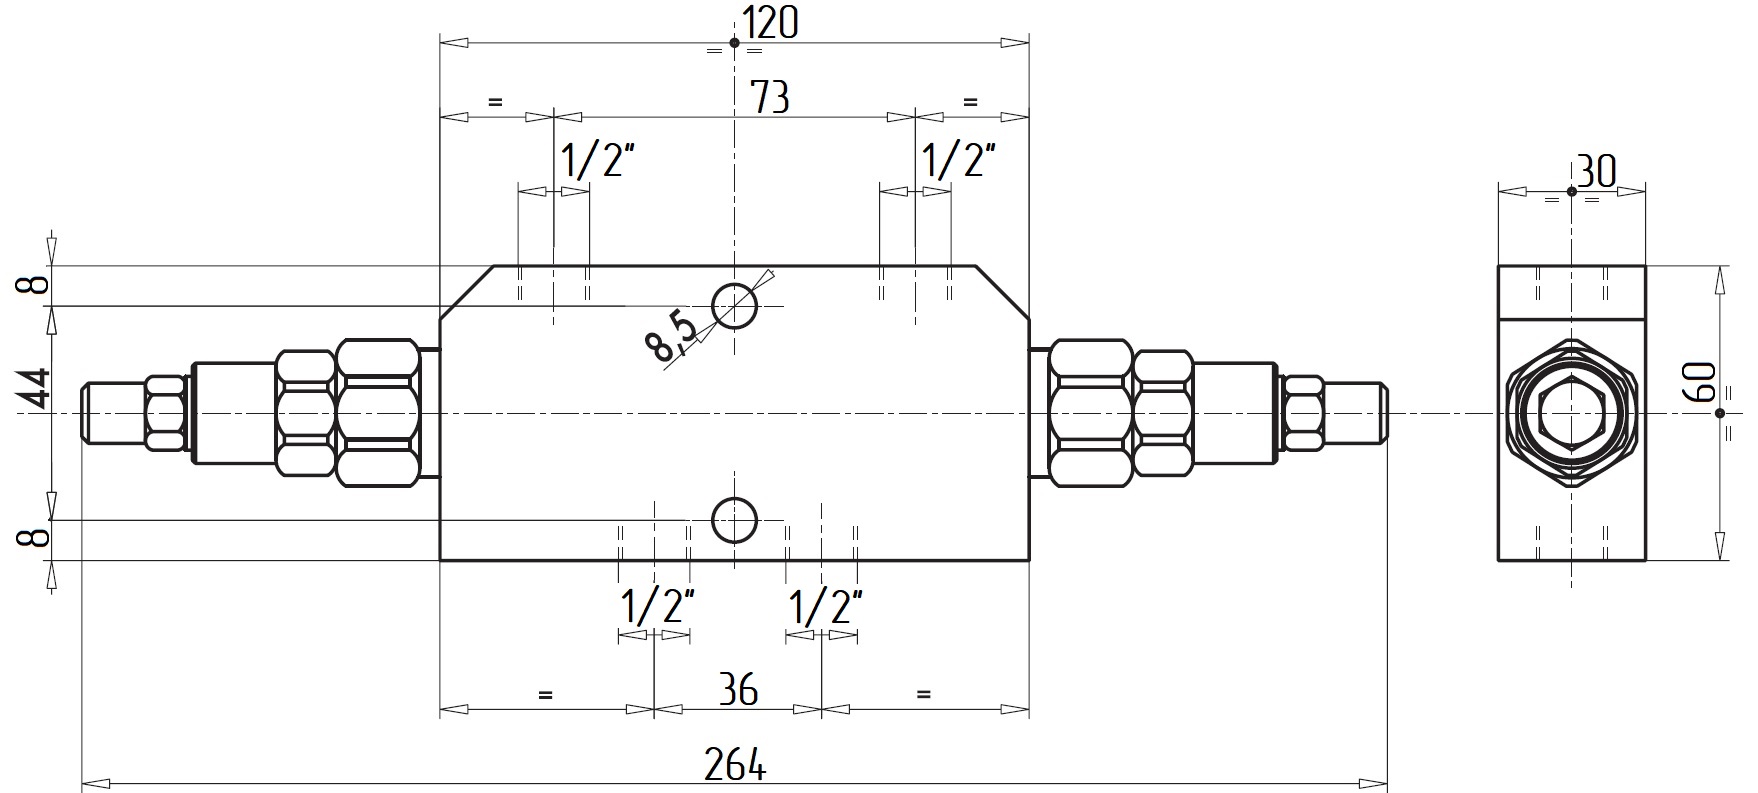 Габаритные размеры V0430-VBCD 1/2 DE Подпорно-тормозной клапан двусторонний